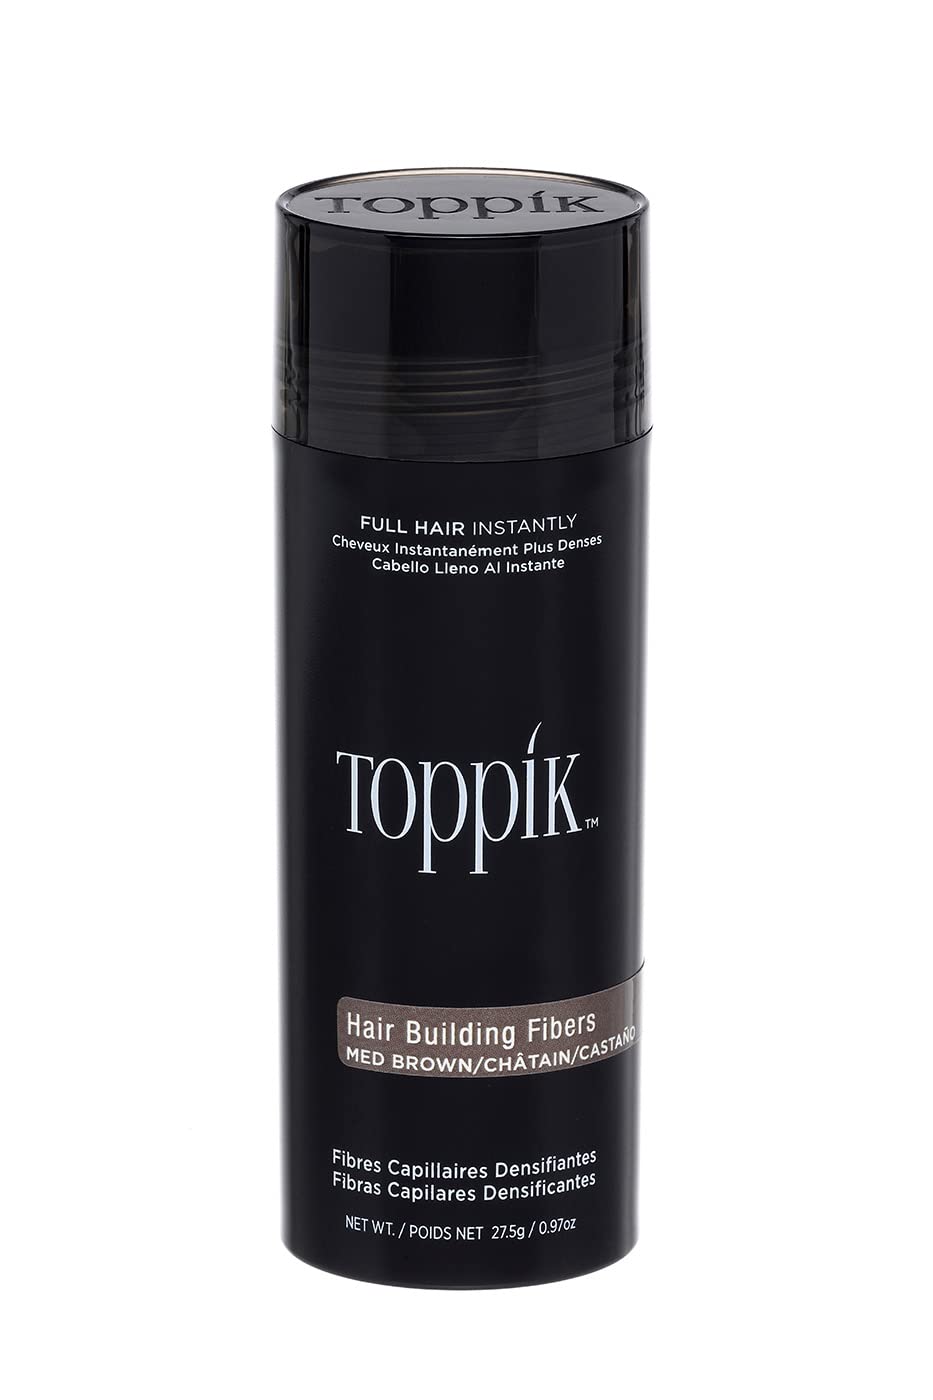 Toppik, pudr pro zahuštění vlasů, odstín Dark brown, 12 g, bez krabičky